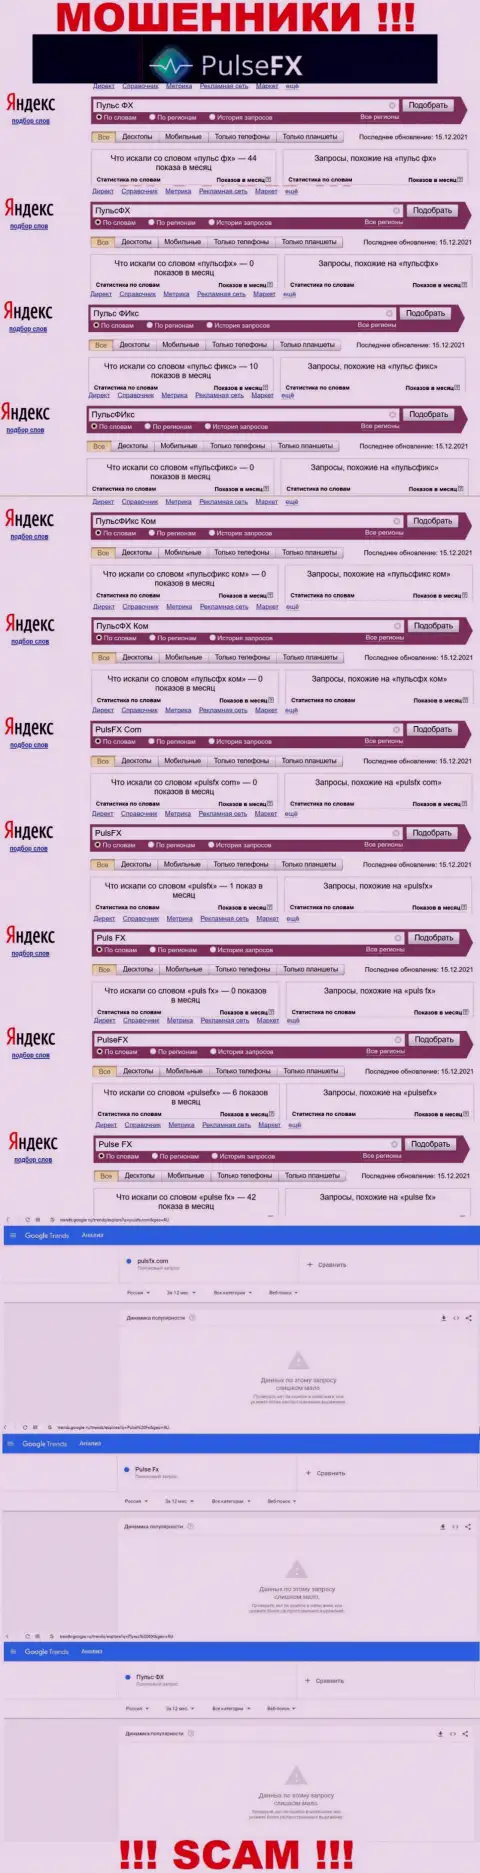 Суммарное число online-запросов в интернете по бренду мошенников PulseFX